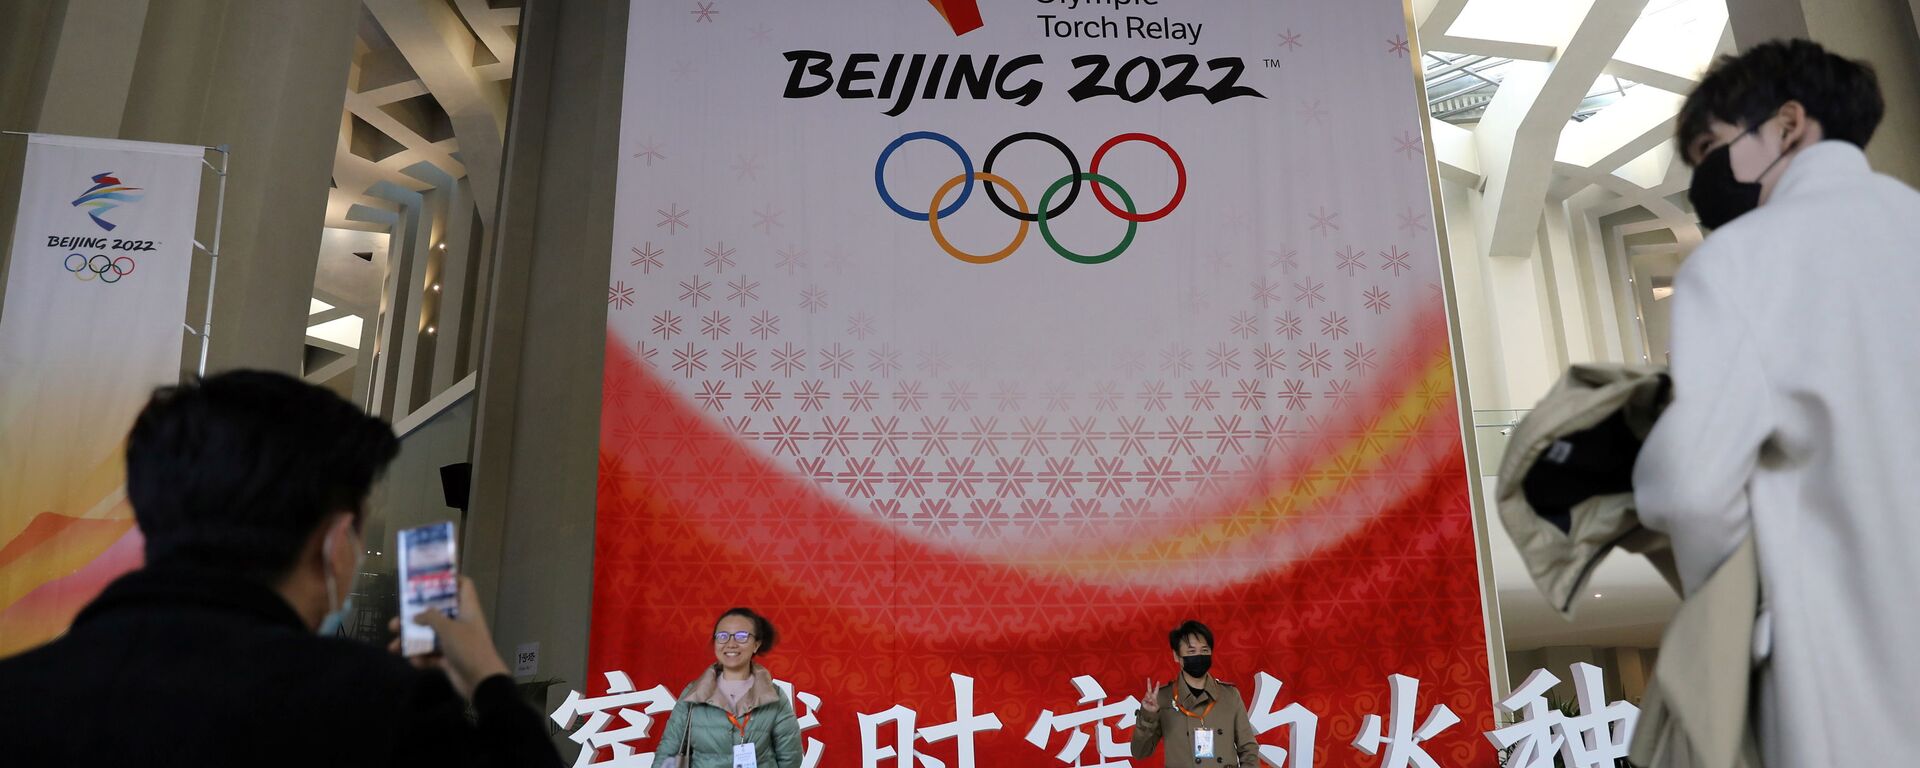 مراسم احتفالية باستقبال شعلة الأولمبياد للألعاب الأولمبية الشتوية بكين 2022، 20 أكتوبر 2021 - سبوتنيك عربي, 1920, 04.02.2022